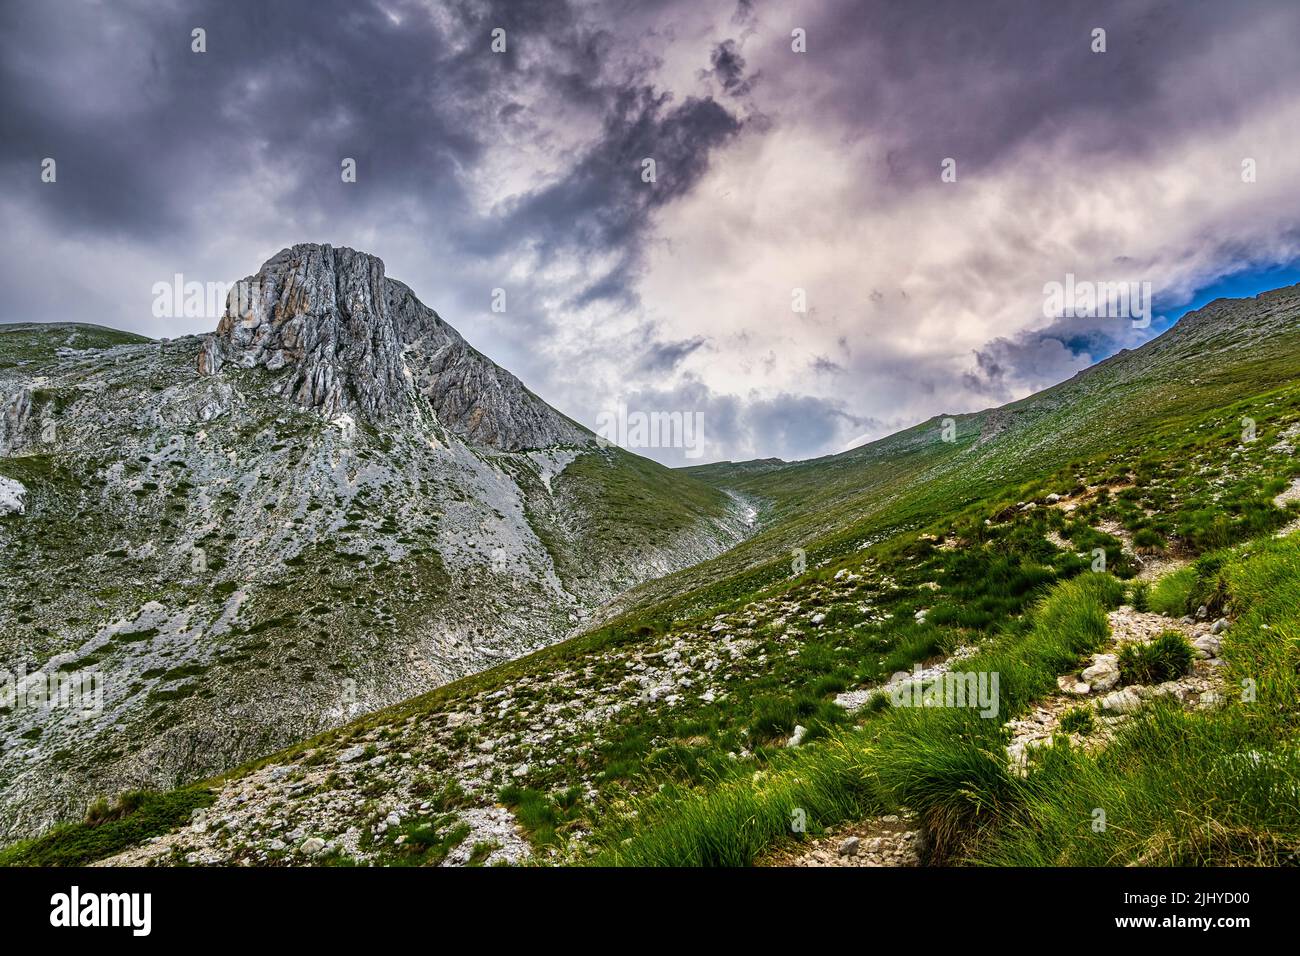 Panorama de la cima del Monte Camicia, en el Parque Nacional Gran Sasso y Monti della Laga, durante un repentino cambio de tiempo. Abruzos Foto de stock